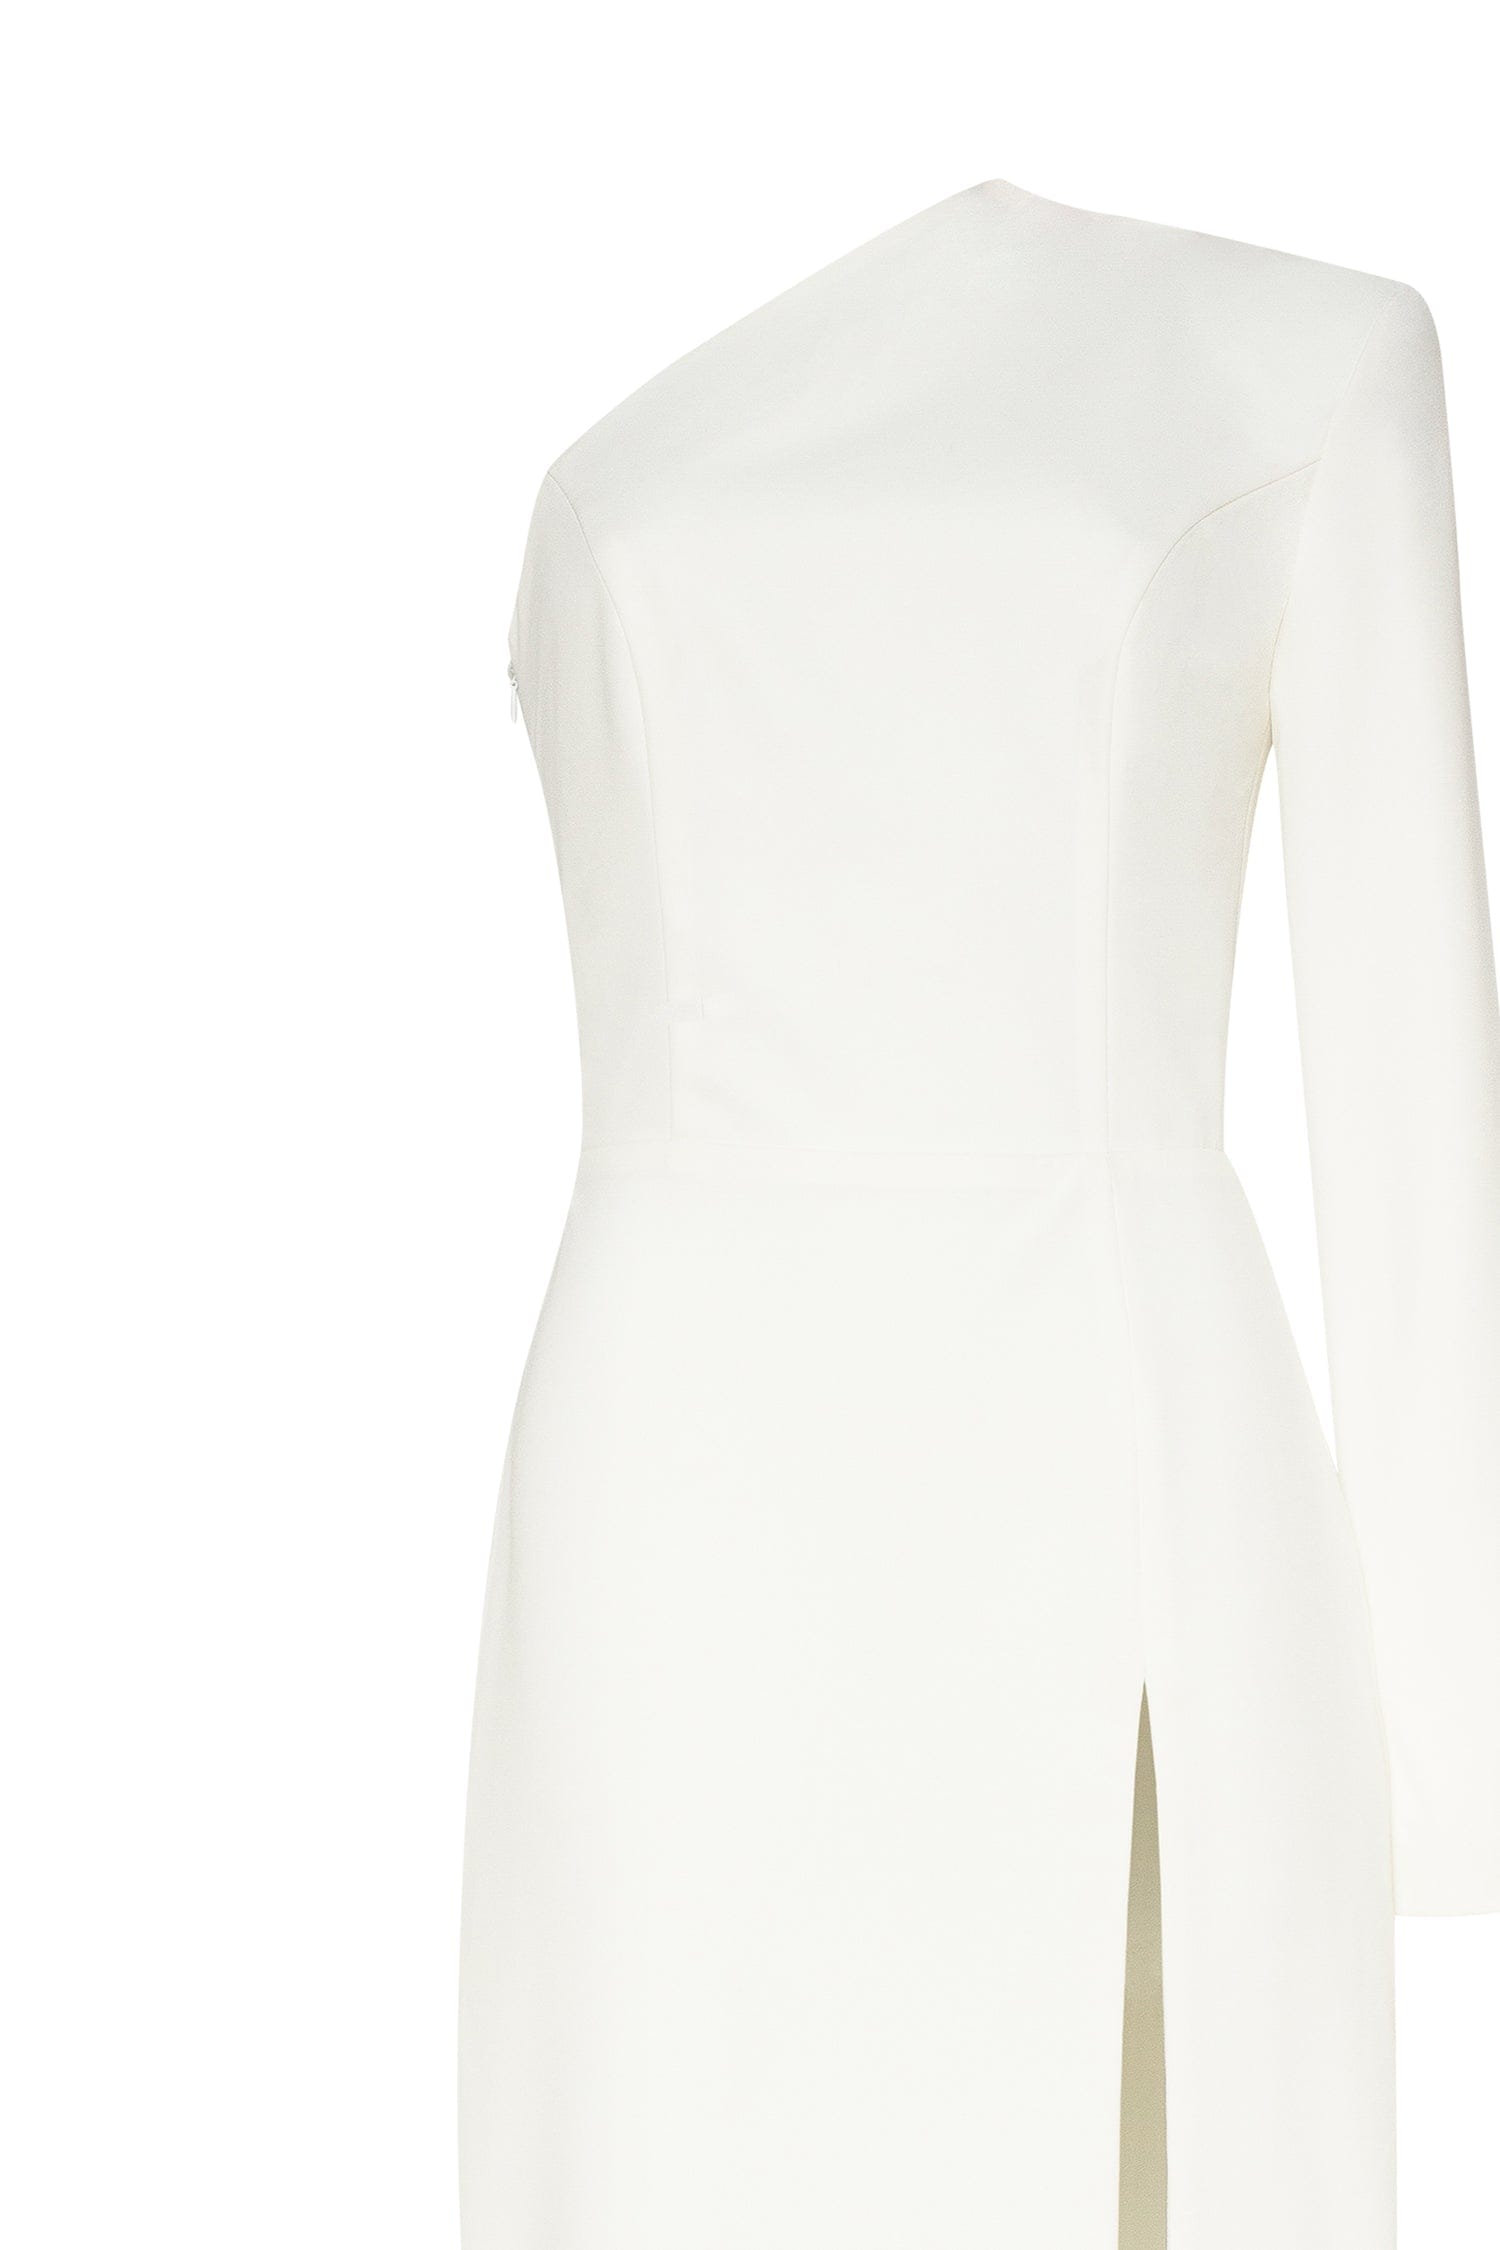 Buy Women's White Forever New Casual Dresses Online | Next UK